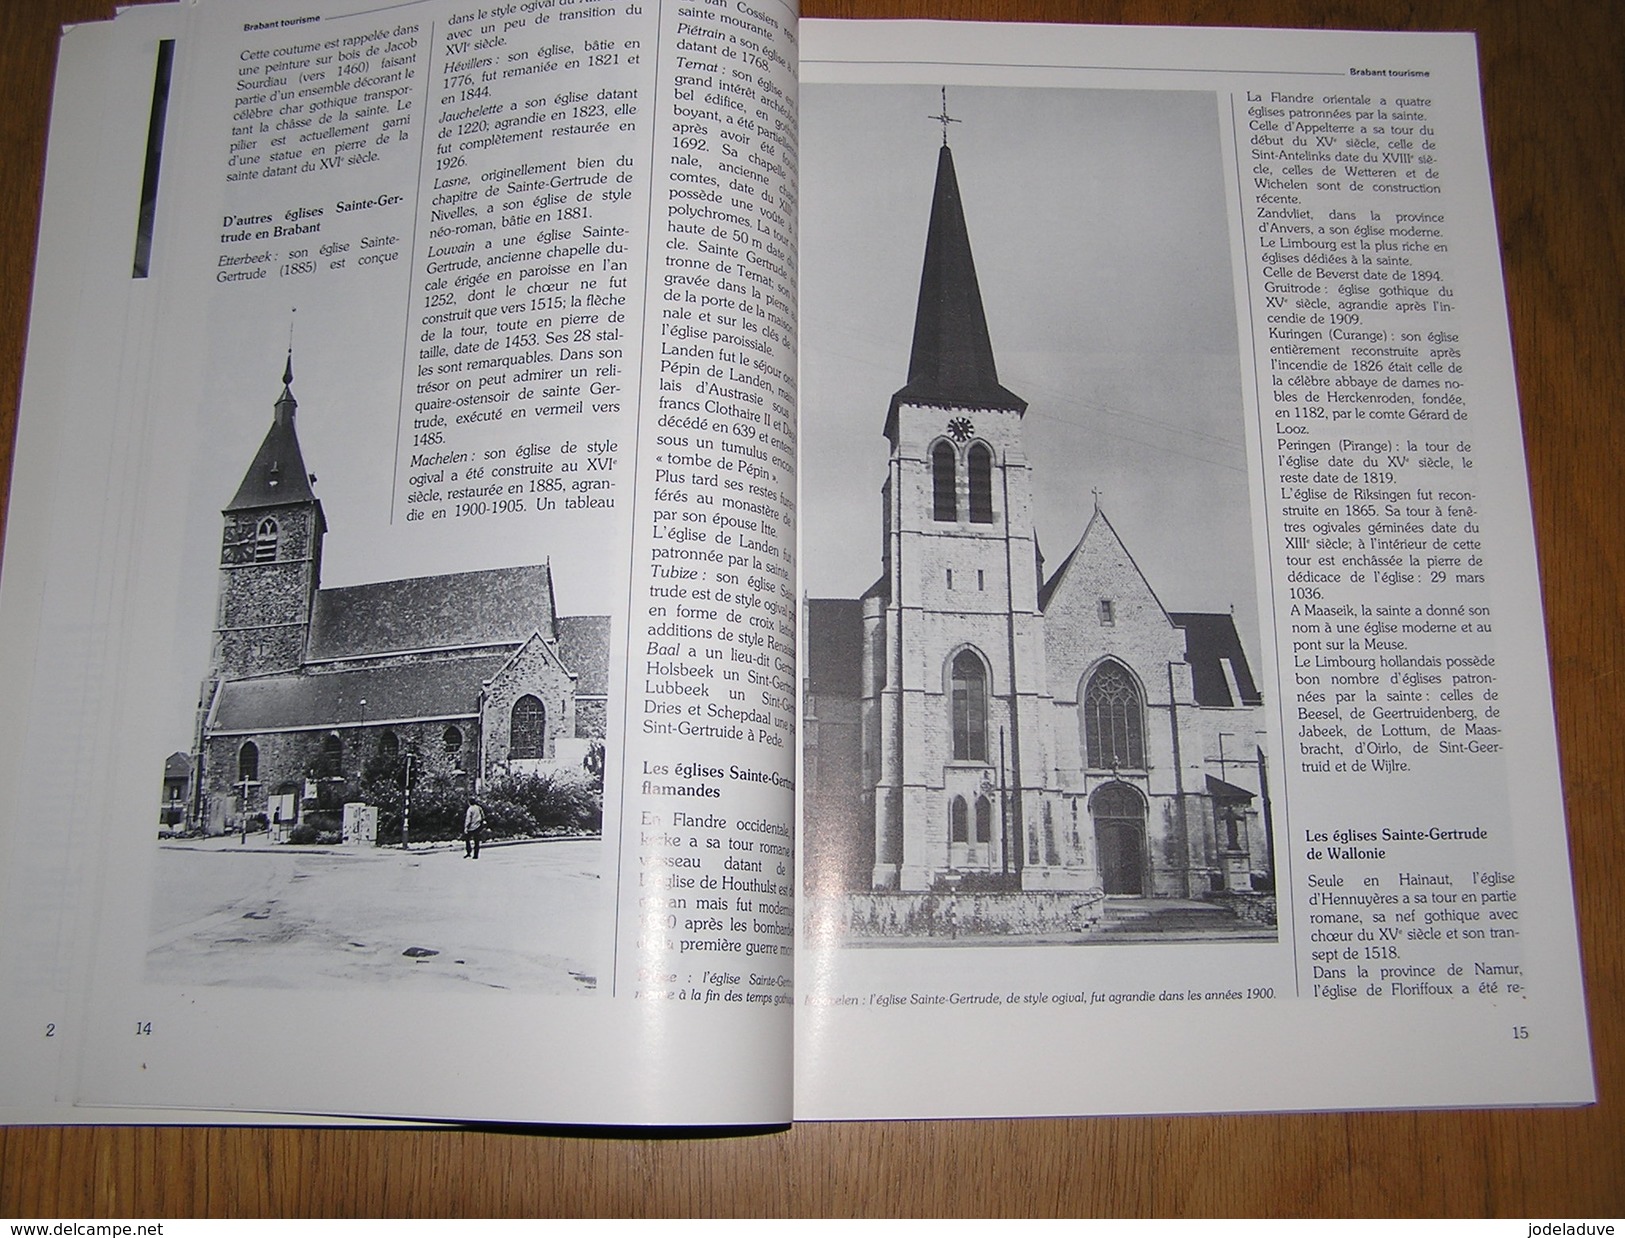 BRABANT Revue N° 5 6 1986 Régionalisme Brabant Béjart Chaumont Gistoux Jette Diligem Biscuiterie Abbaye Villers Nivelles